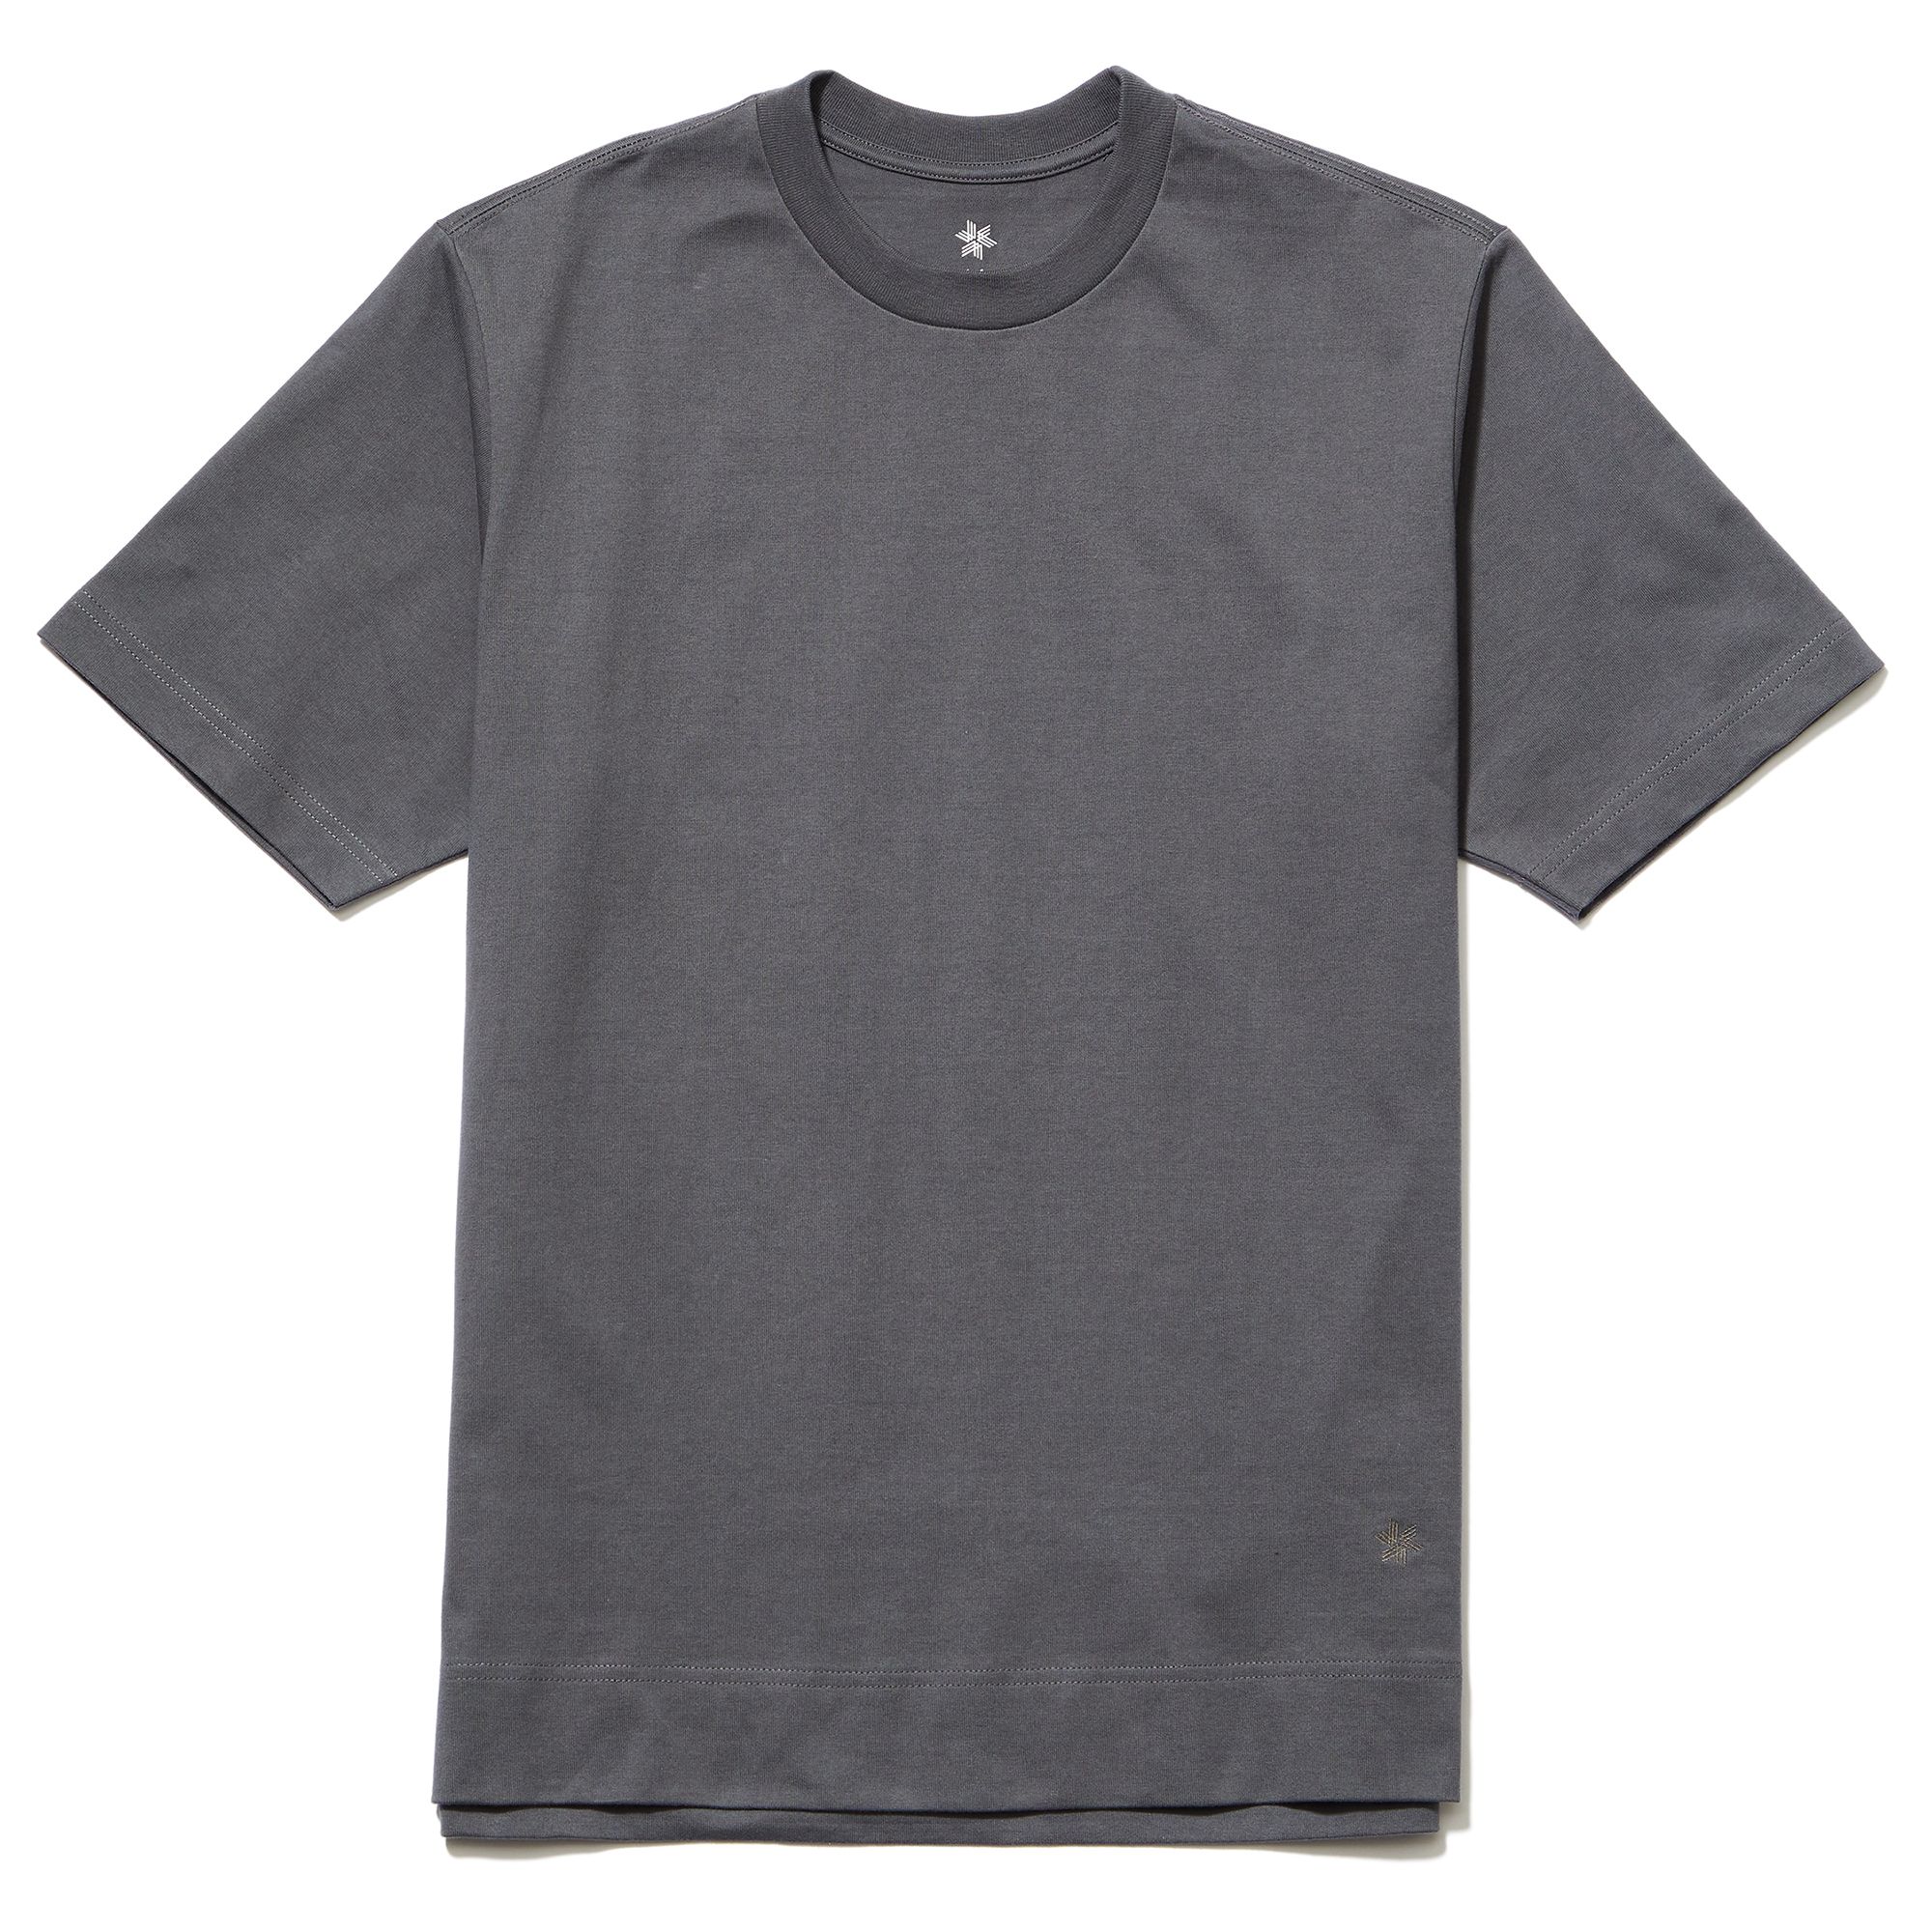 ワンポイントロゴtシャツ メンズ Gl Goldwin公式通販 アウトレット